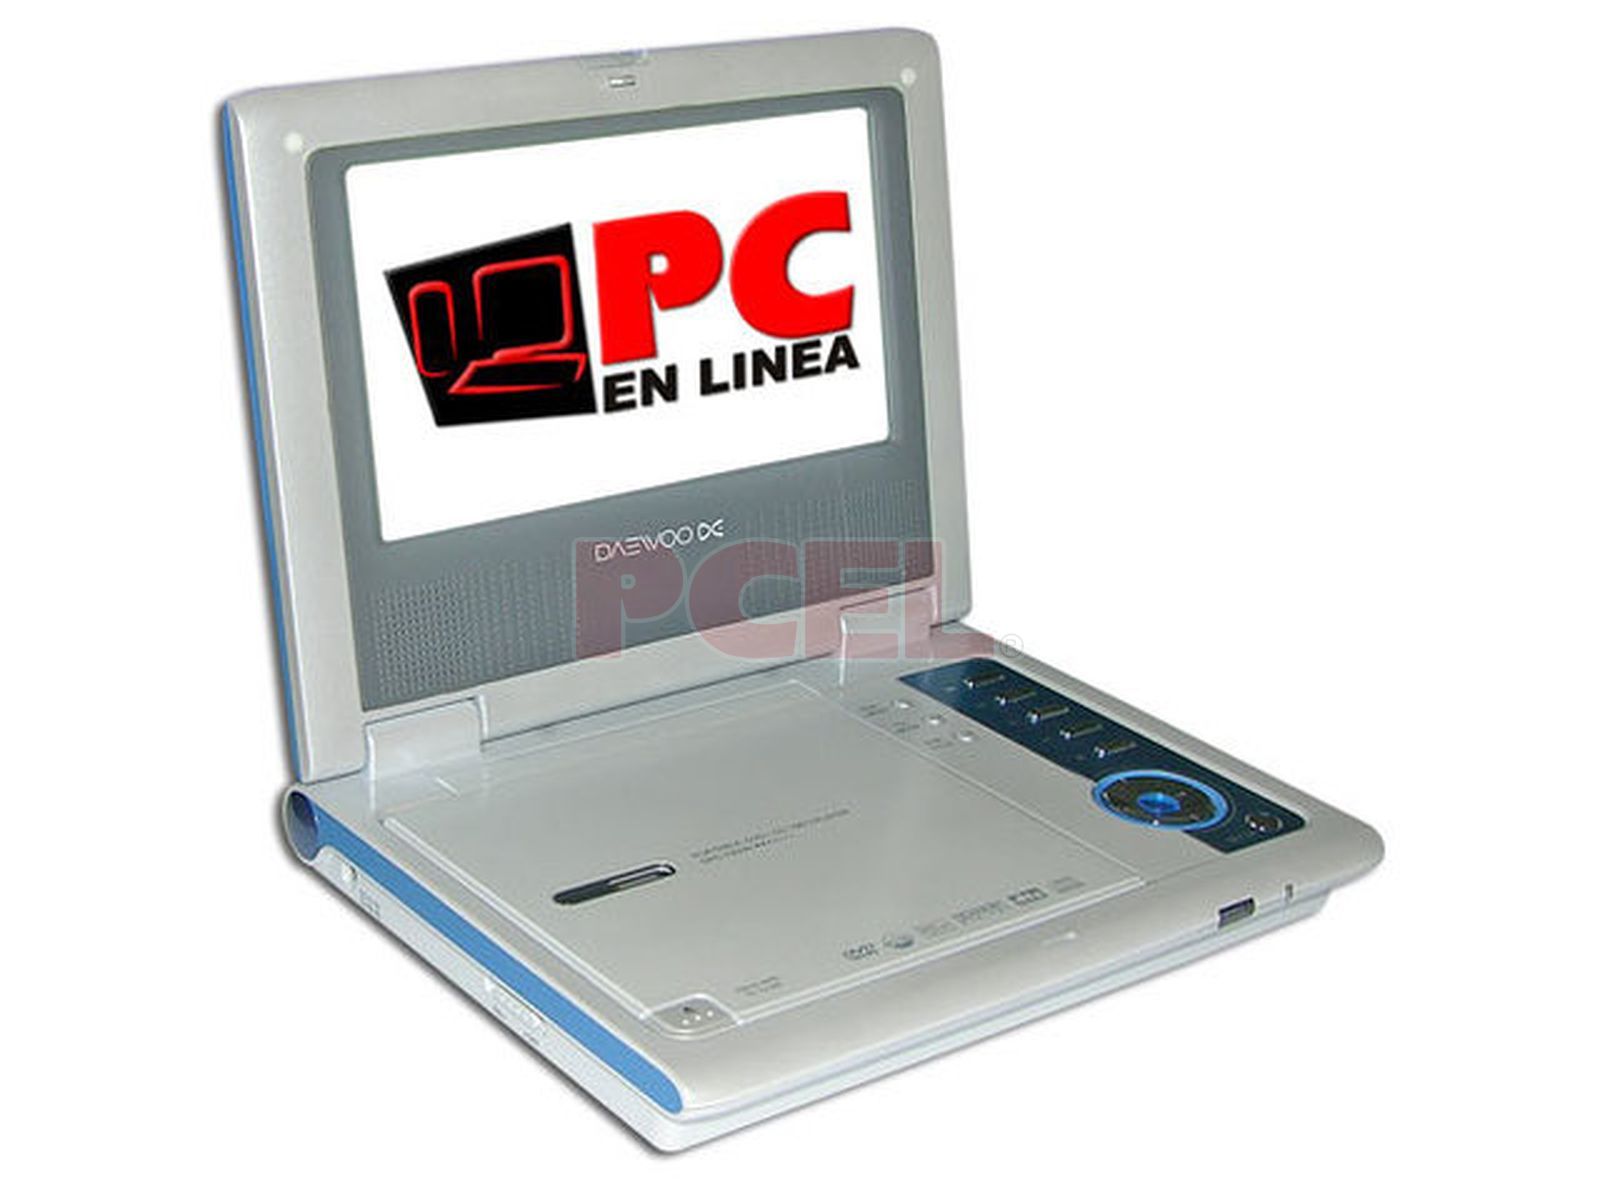 DVD Portátil Daewoo con Pantalla LCD Widescreen de 7”, Multiregión, Color Azul Plateado